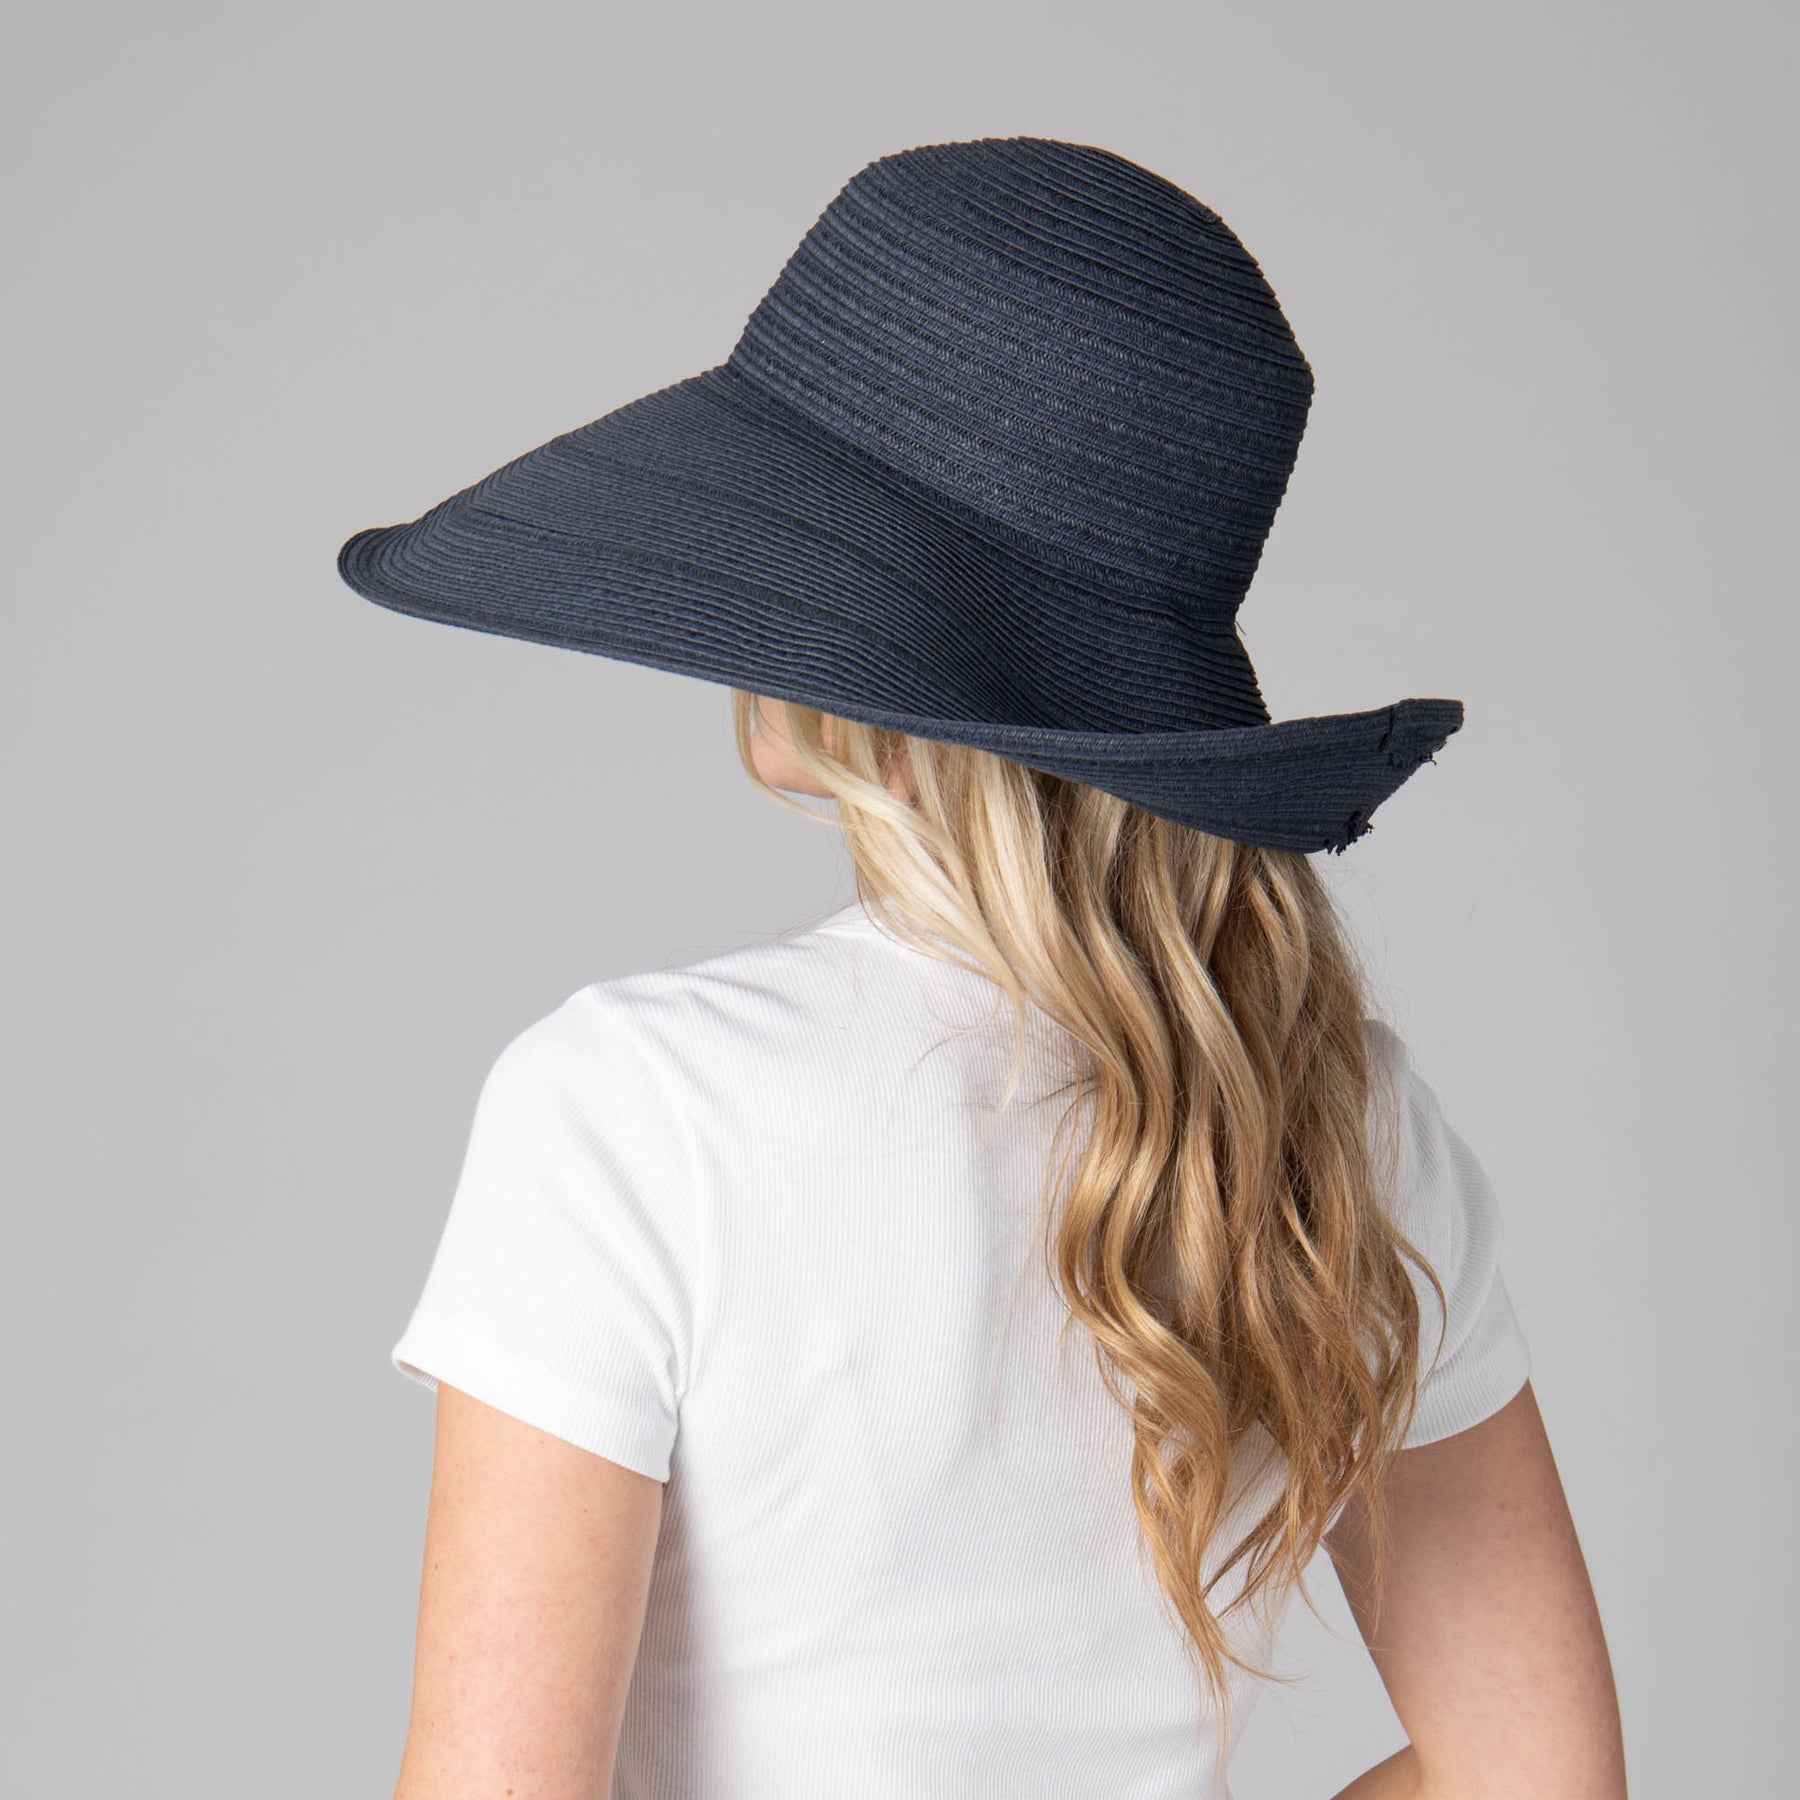 SDHC Newport - Women's 6-Way Round Crown Sun Hat Natural